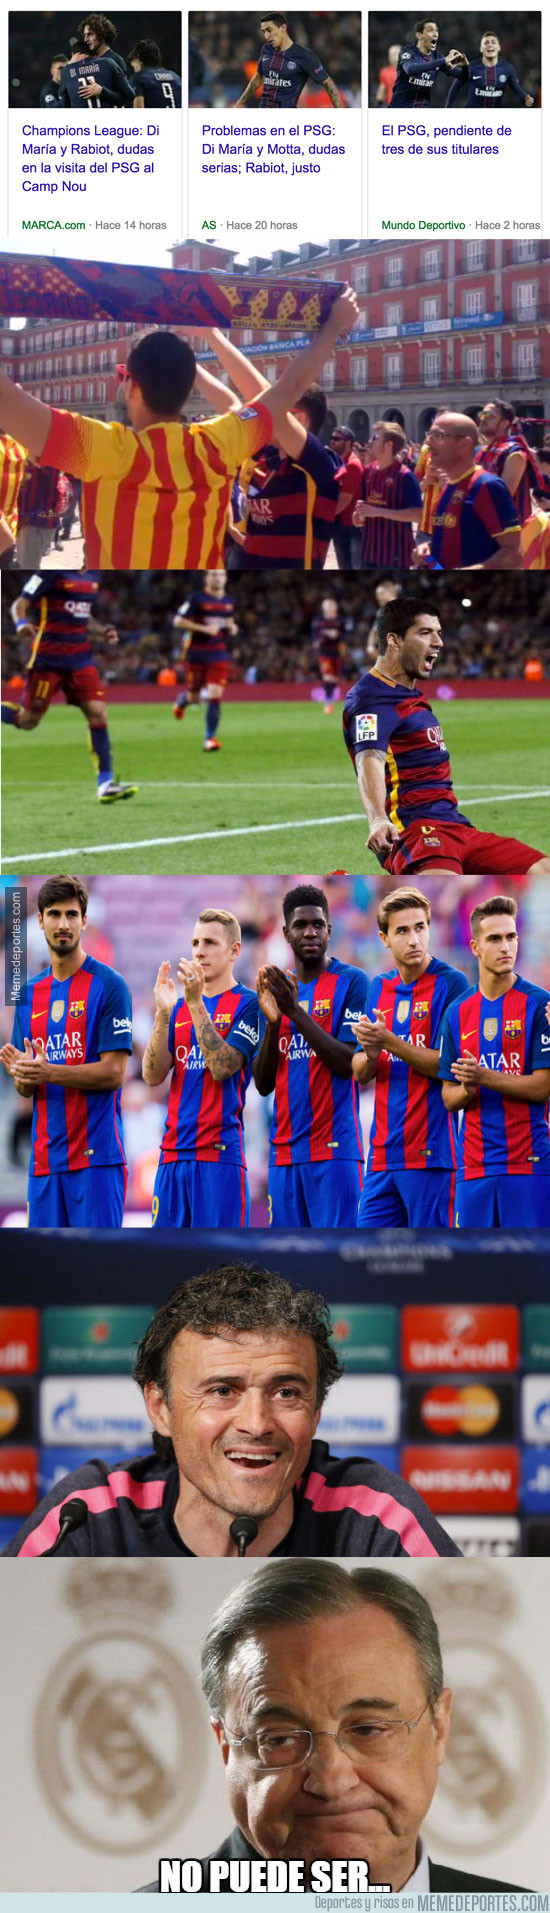 954211 - Buenas noticias para el Barça, esto lo acerca a la remontada